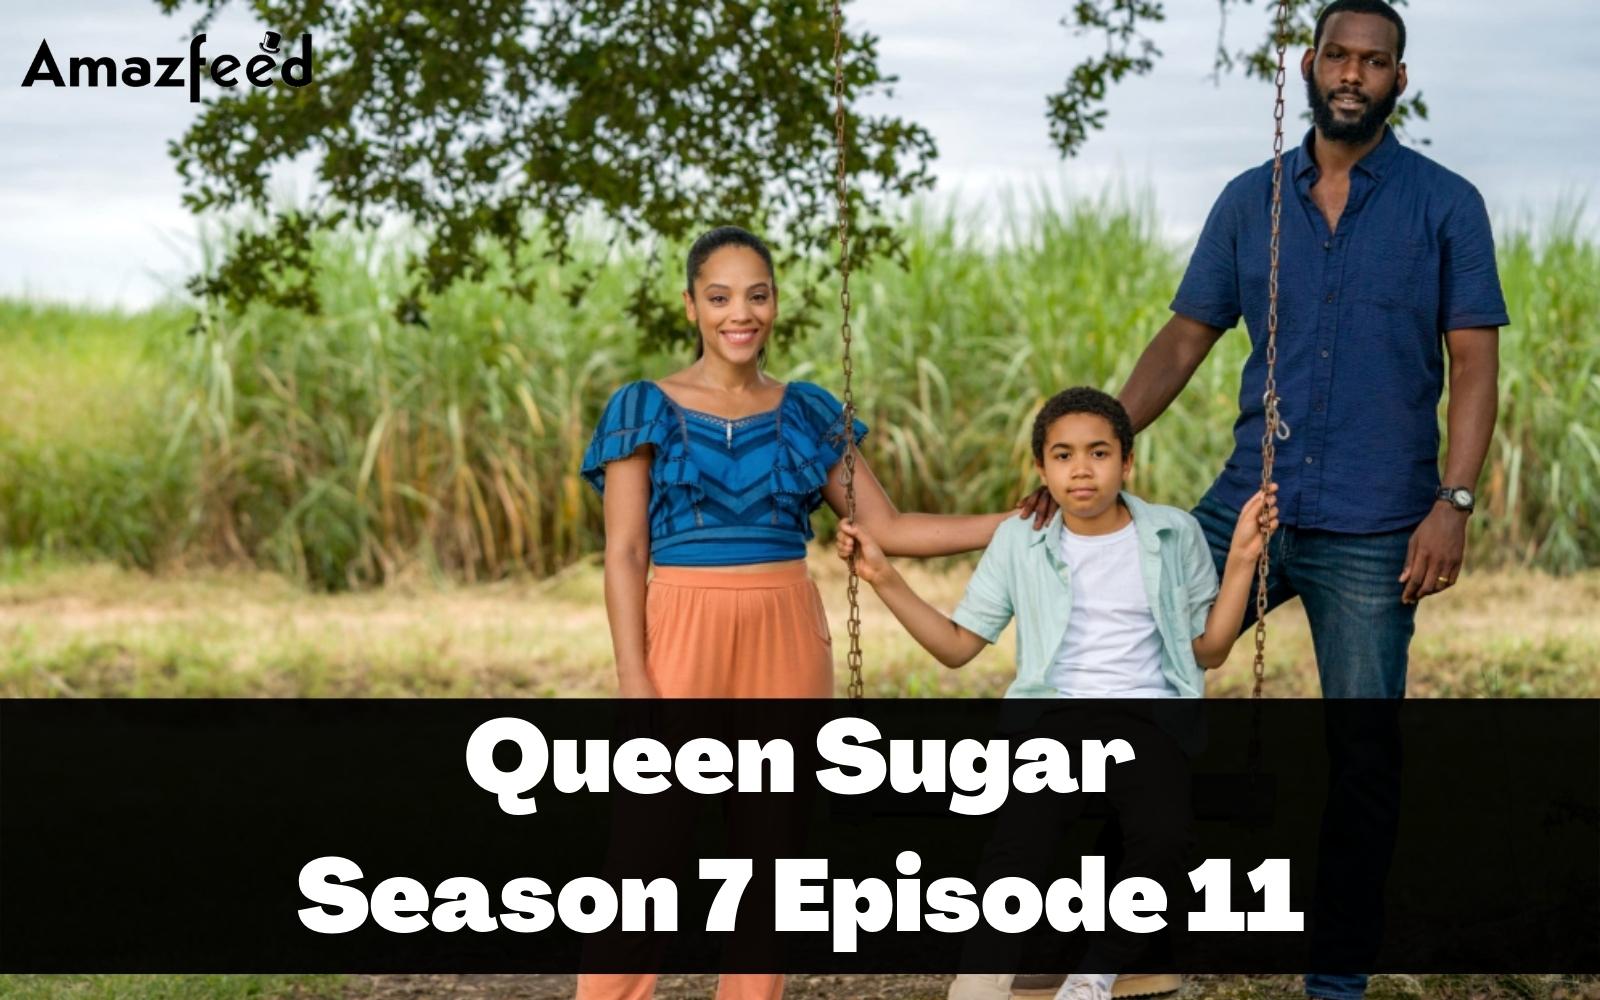 Queen Sugar season 6